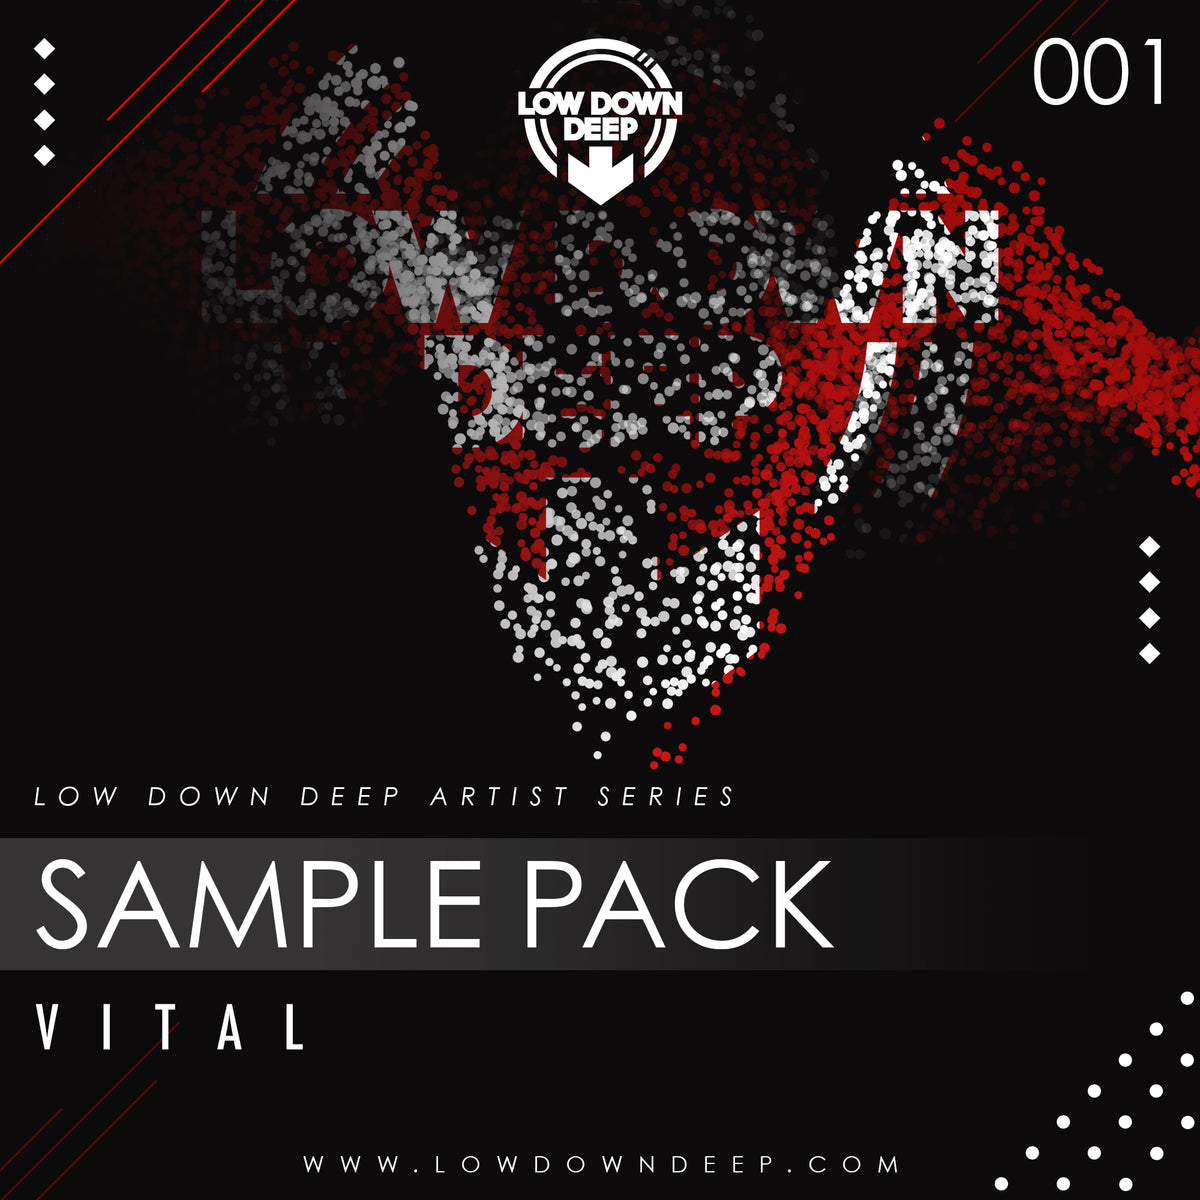 LDD Artist Series Sample Pack 001 - Vital